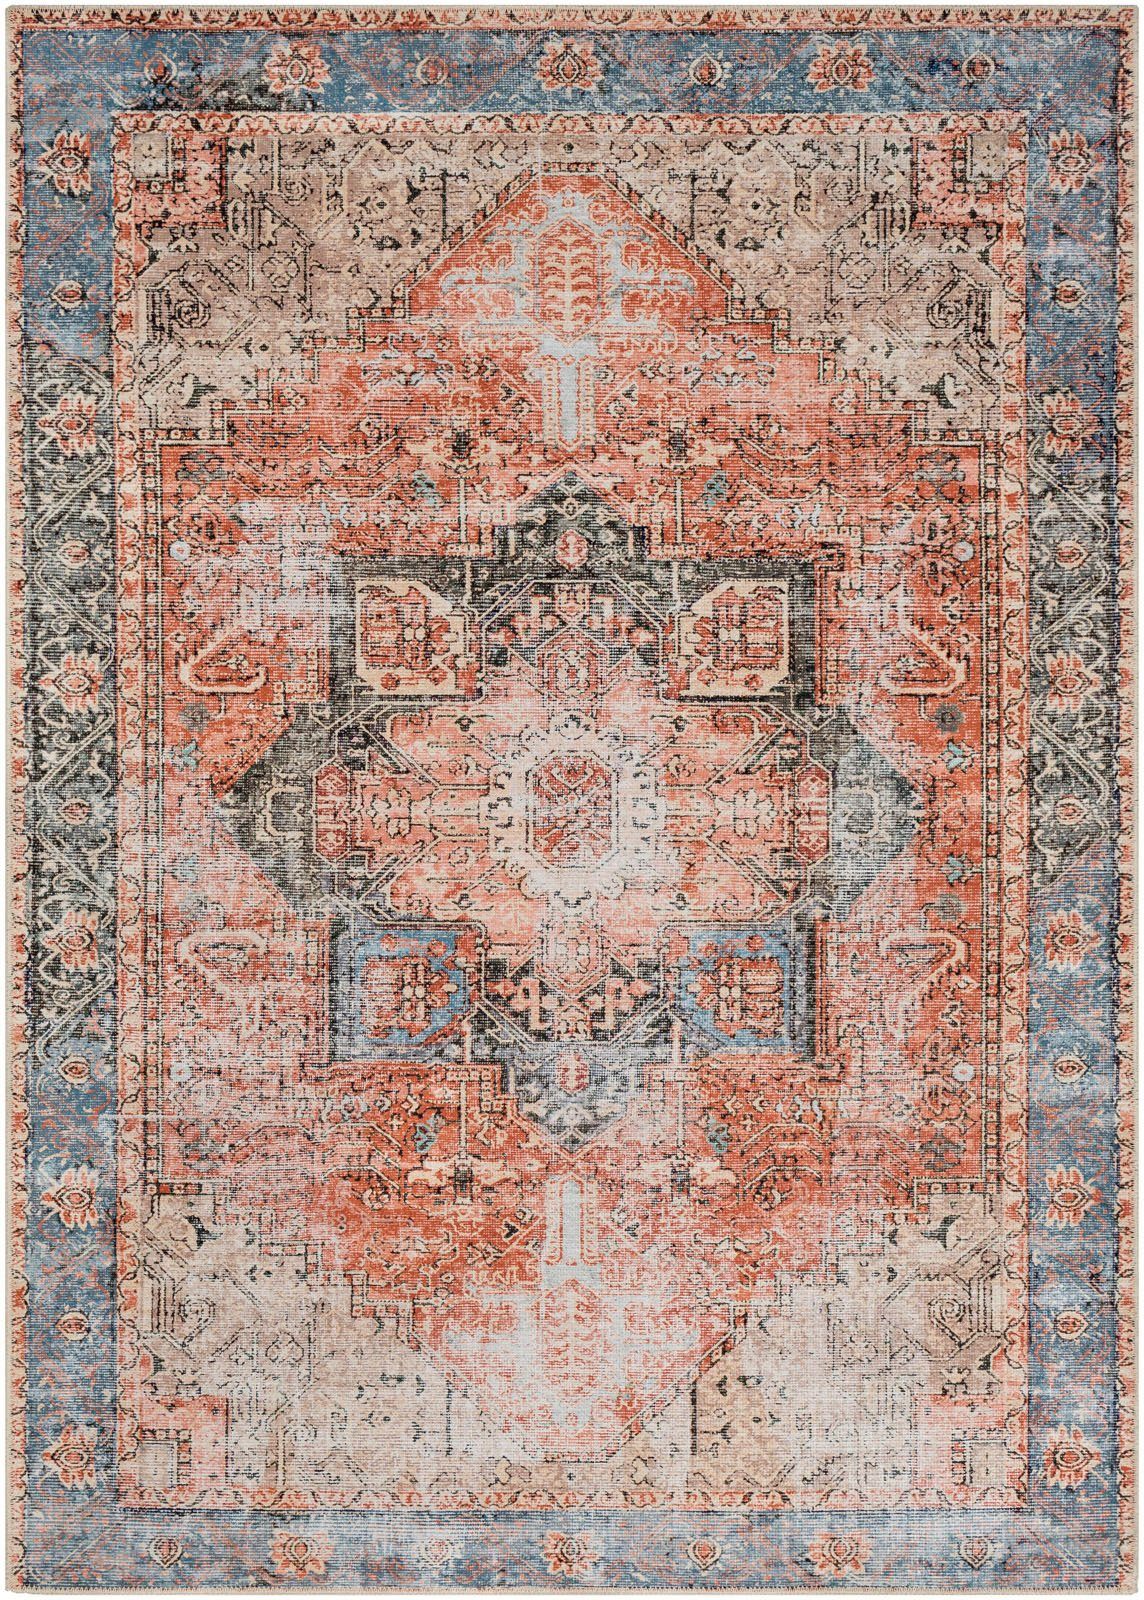 Höhe: Surya, Teppich mm rechteckig, Traditional, 2